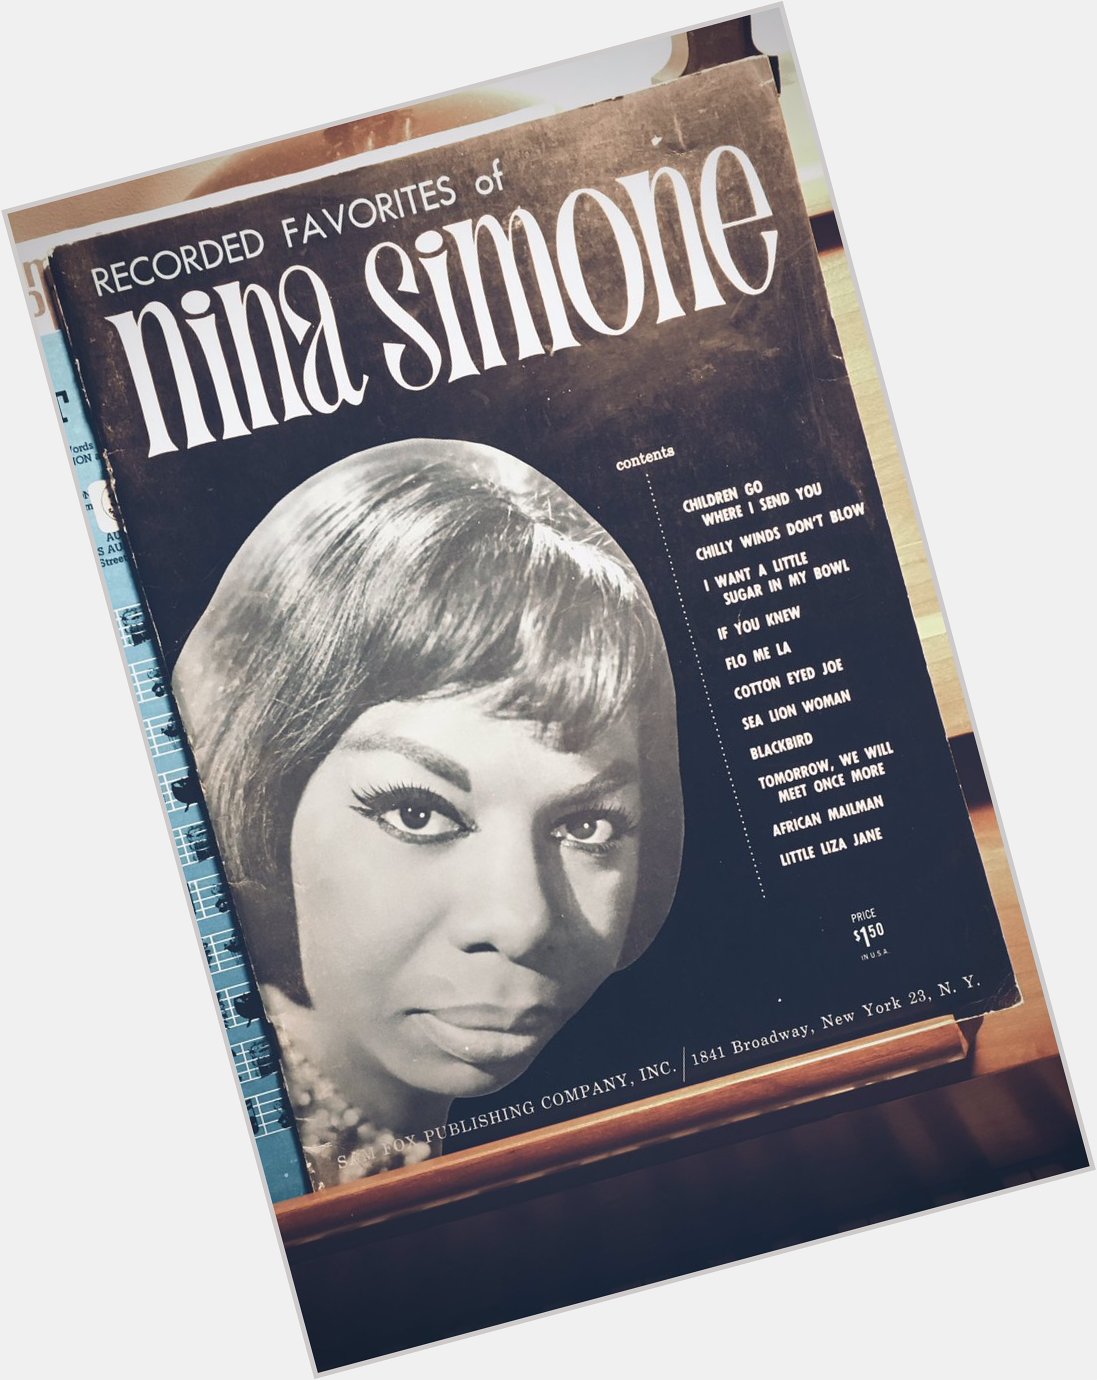 Happy Birthday Nina Simone 